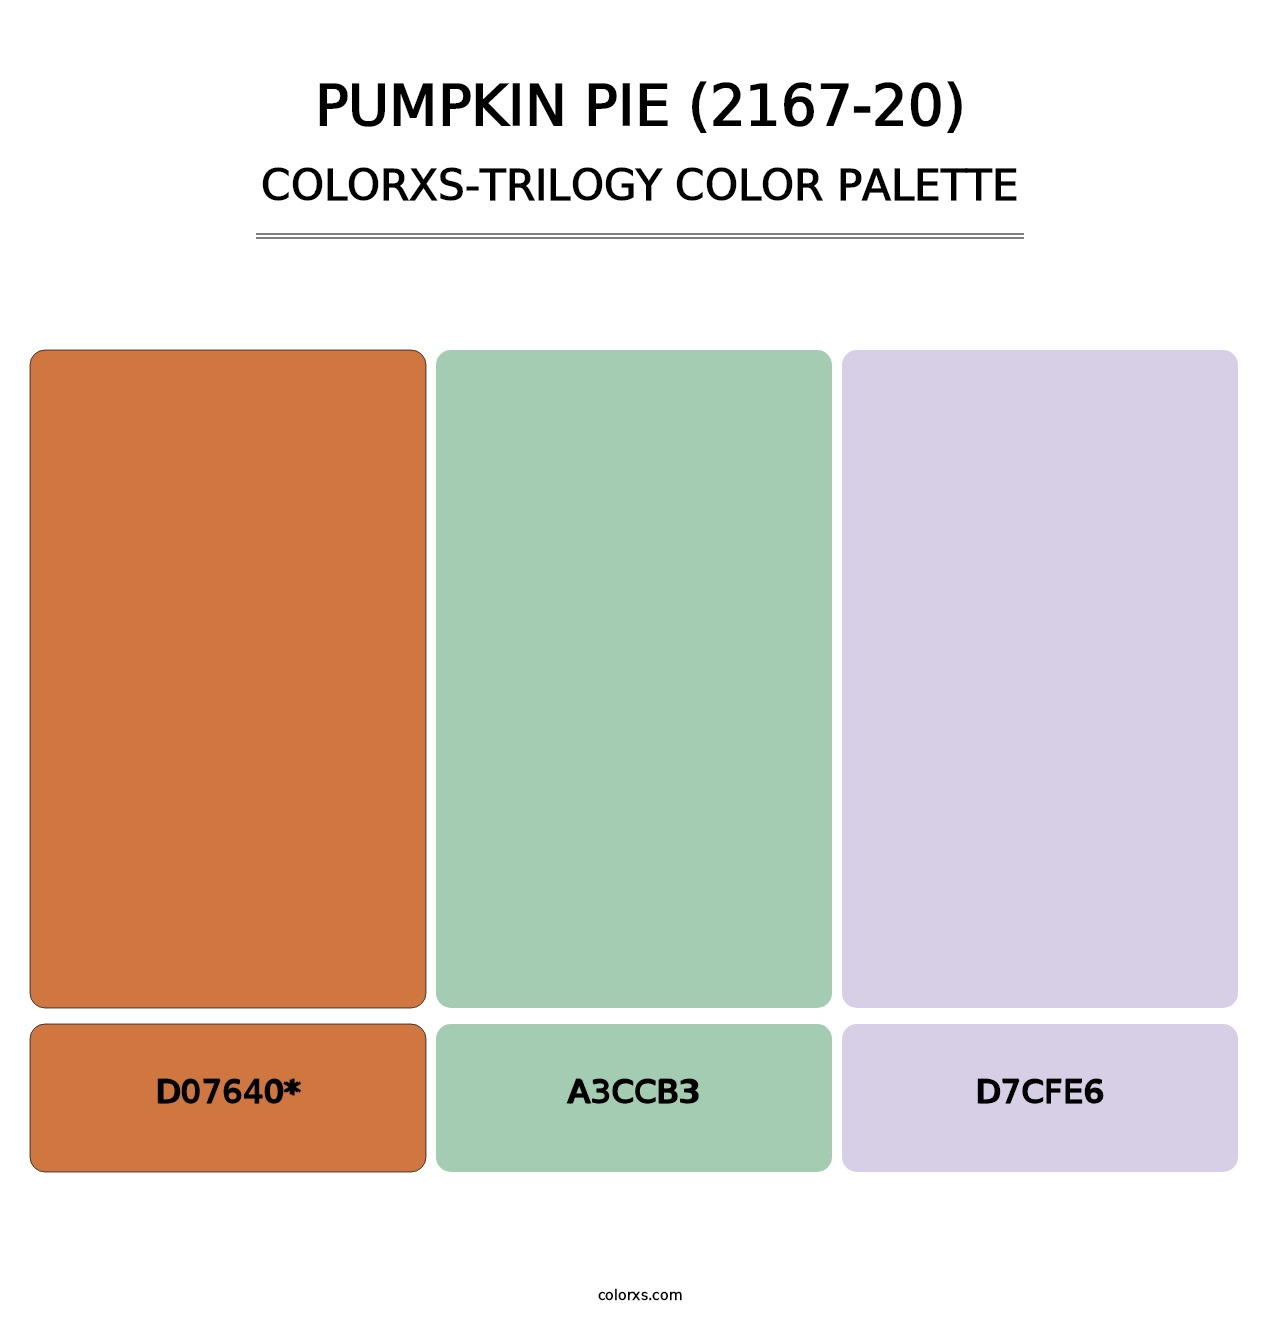 Pumpkin Pie (2167-20) - Colorxs Trilogy Palette